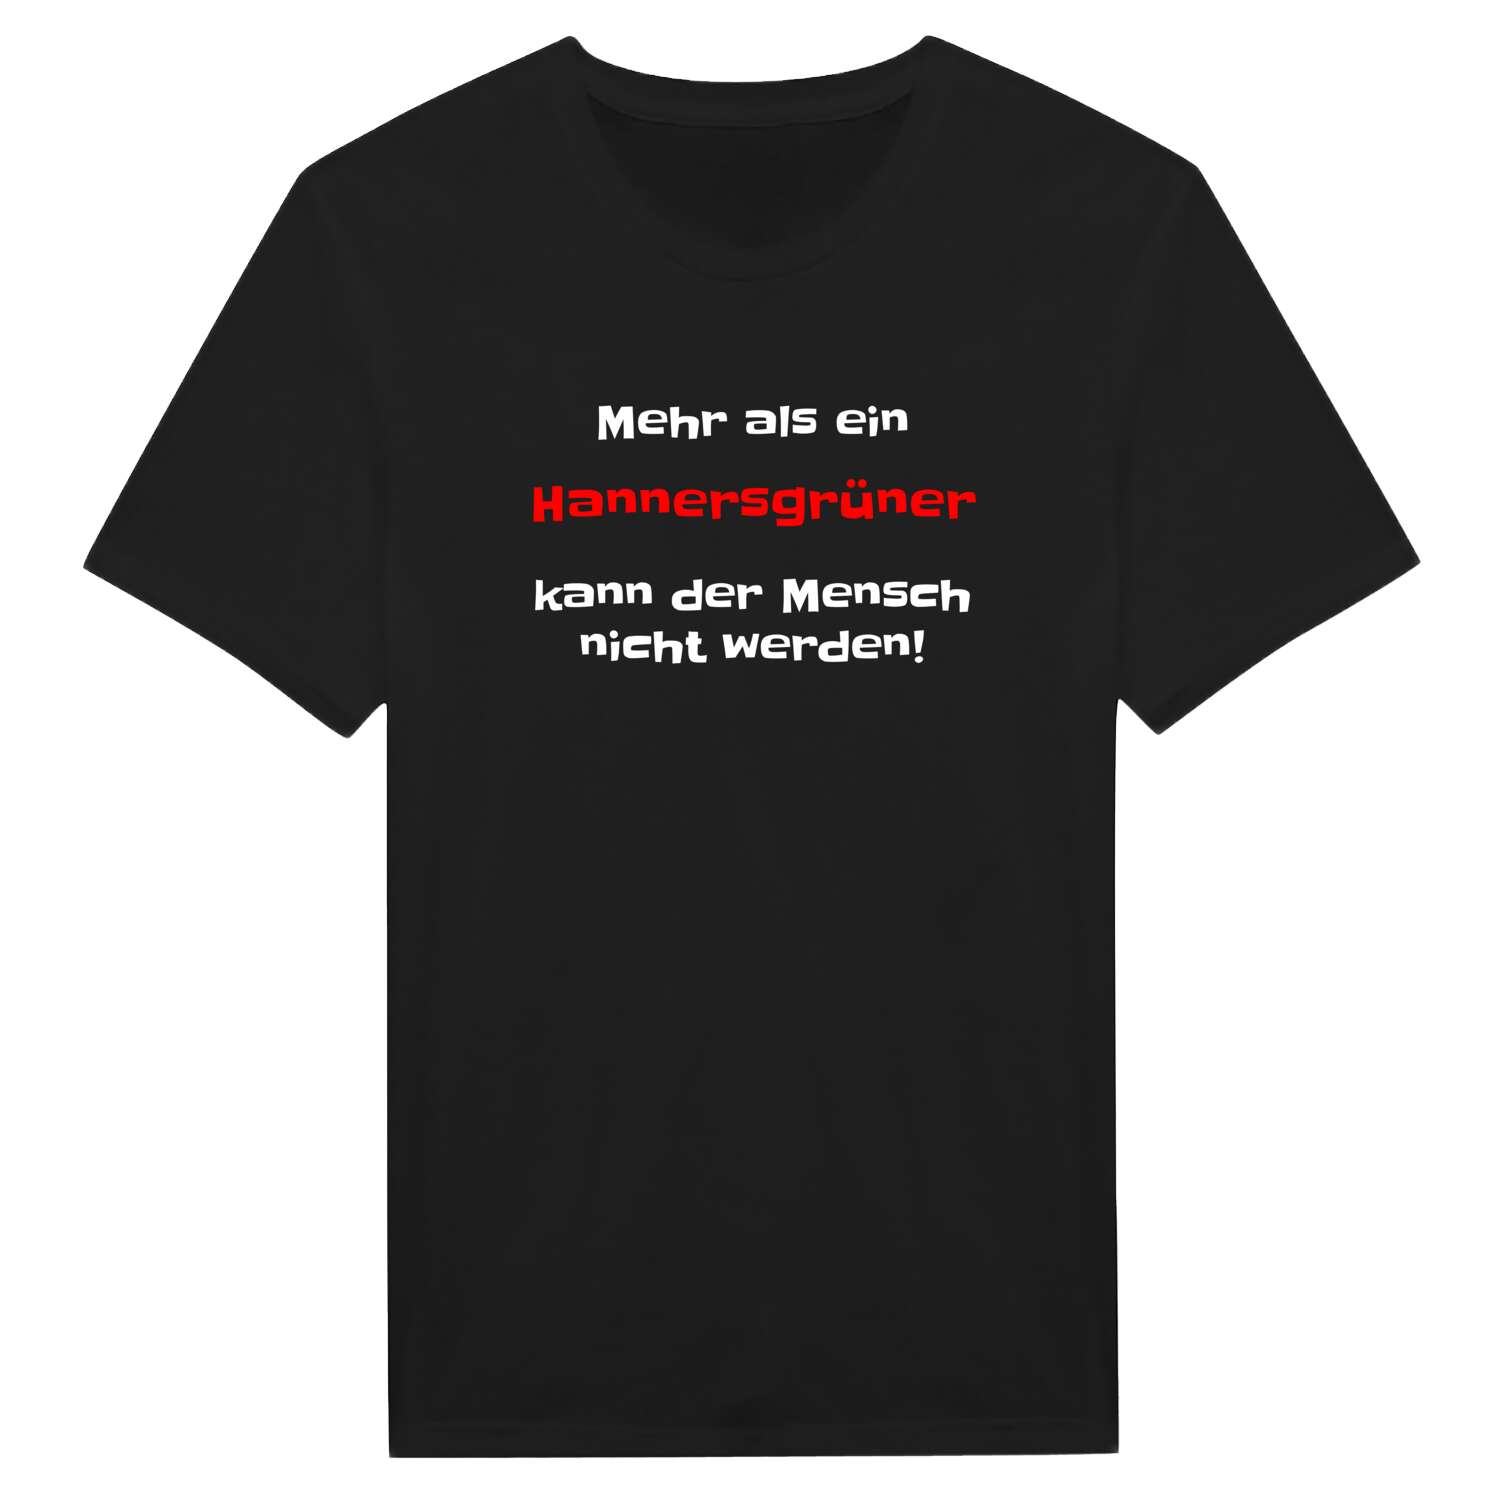 Hannersgrün T-Shirt »Mehr als ein«